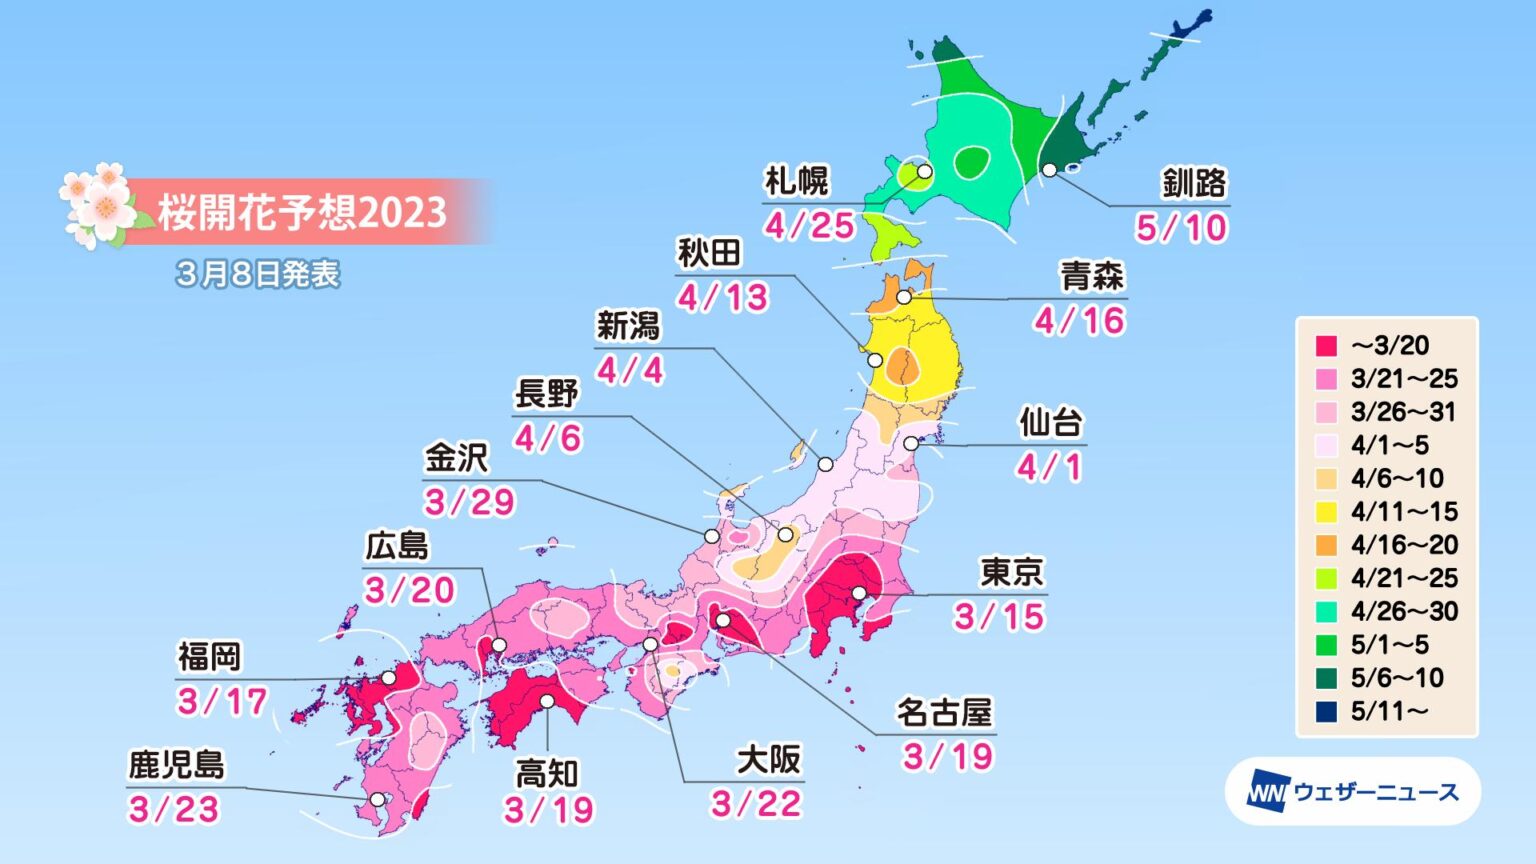 桜の開花予想の日本地図。この地図のなかで開花予想が最も早いのが東京で３月１５日、続いて福岡が３月じゅうしちにち、高知と名古屋がどちらも３月じゅうくにち。大阪は３月２２日、最も遅いのが札幌で４月２５日の予定となっています